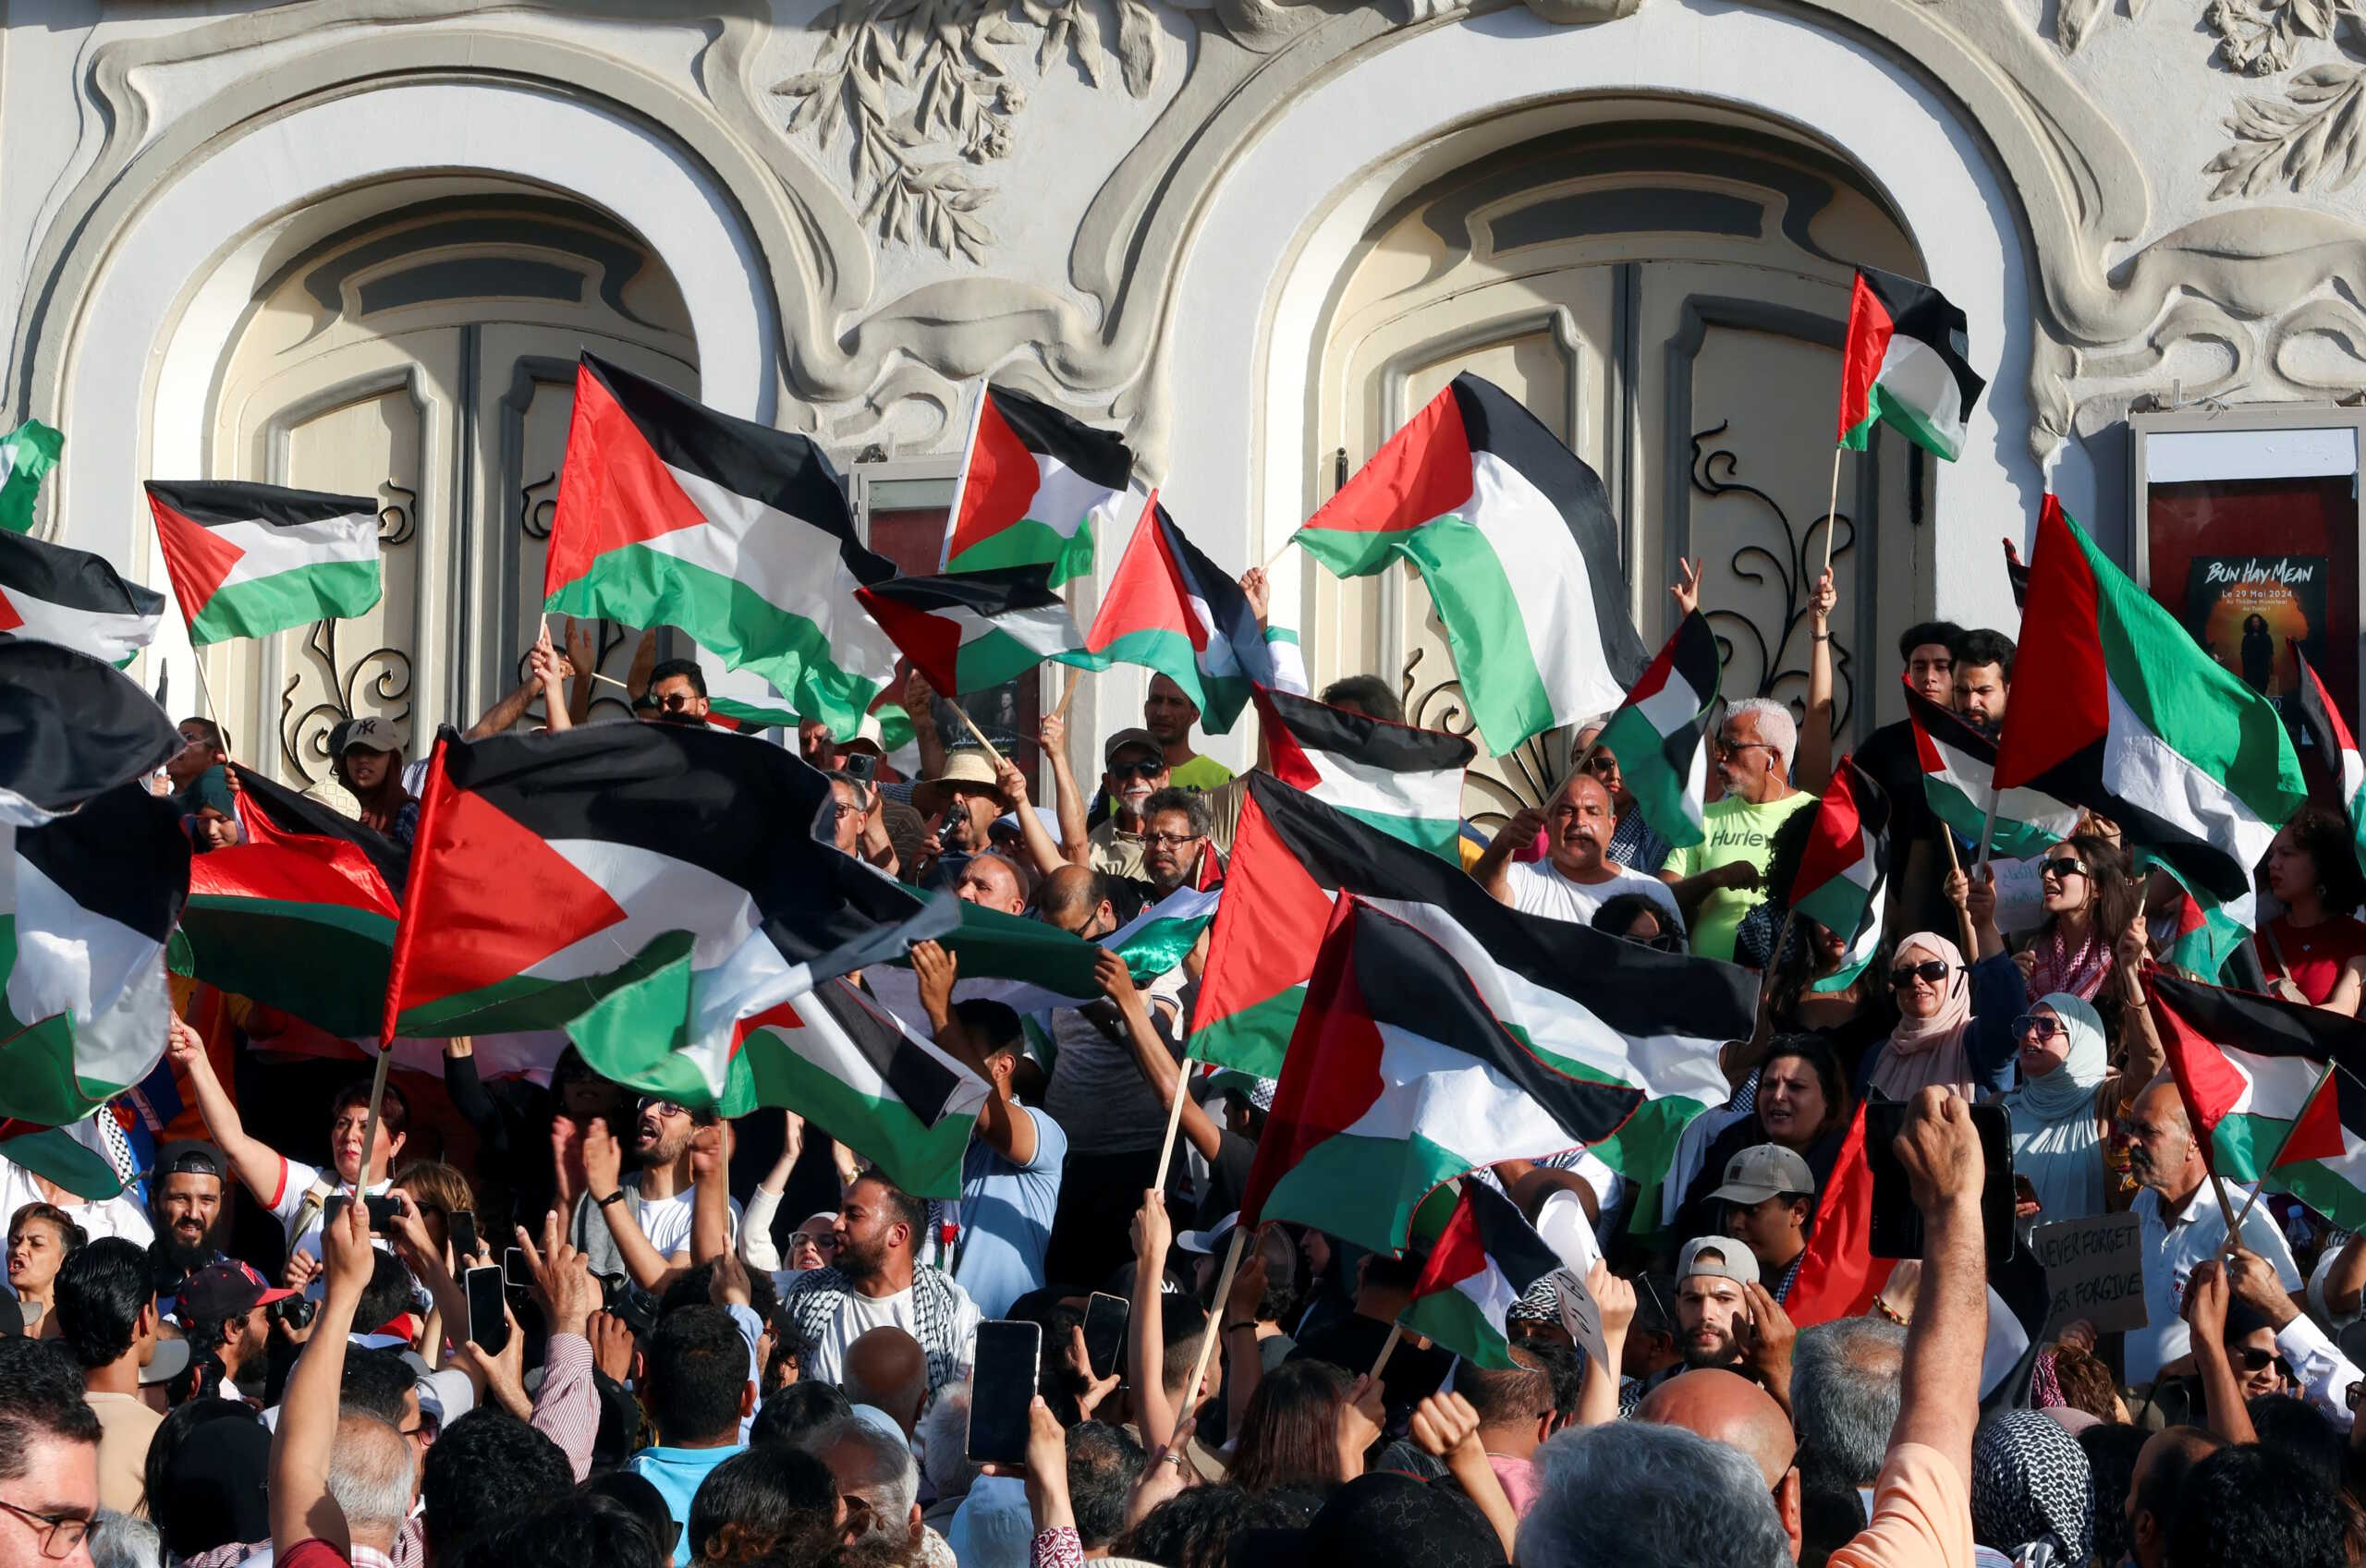 Νορβηγία, Ισπανία και Ιρλανδία αναγνώρισαν επίσημα το κράτος της Παλαιστίνης – Οργή από το Ισραήλ